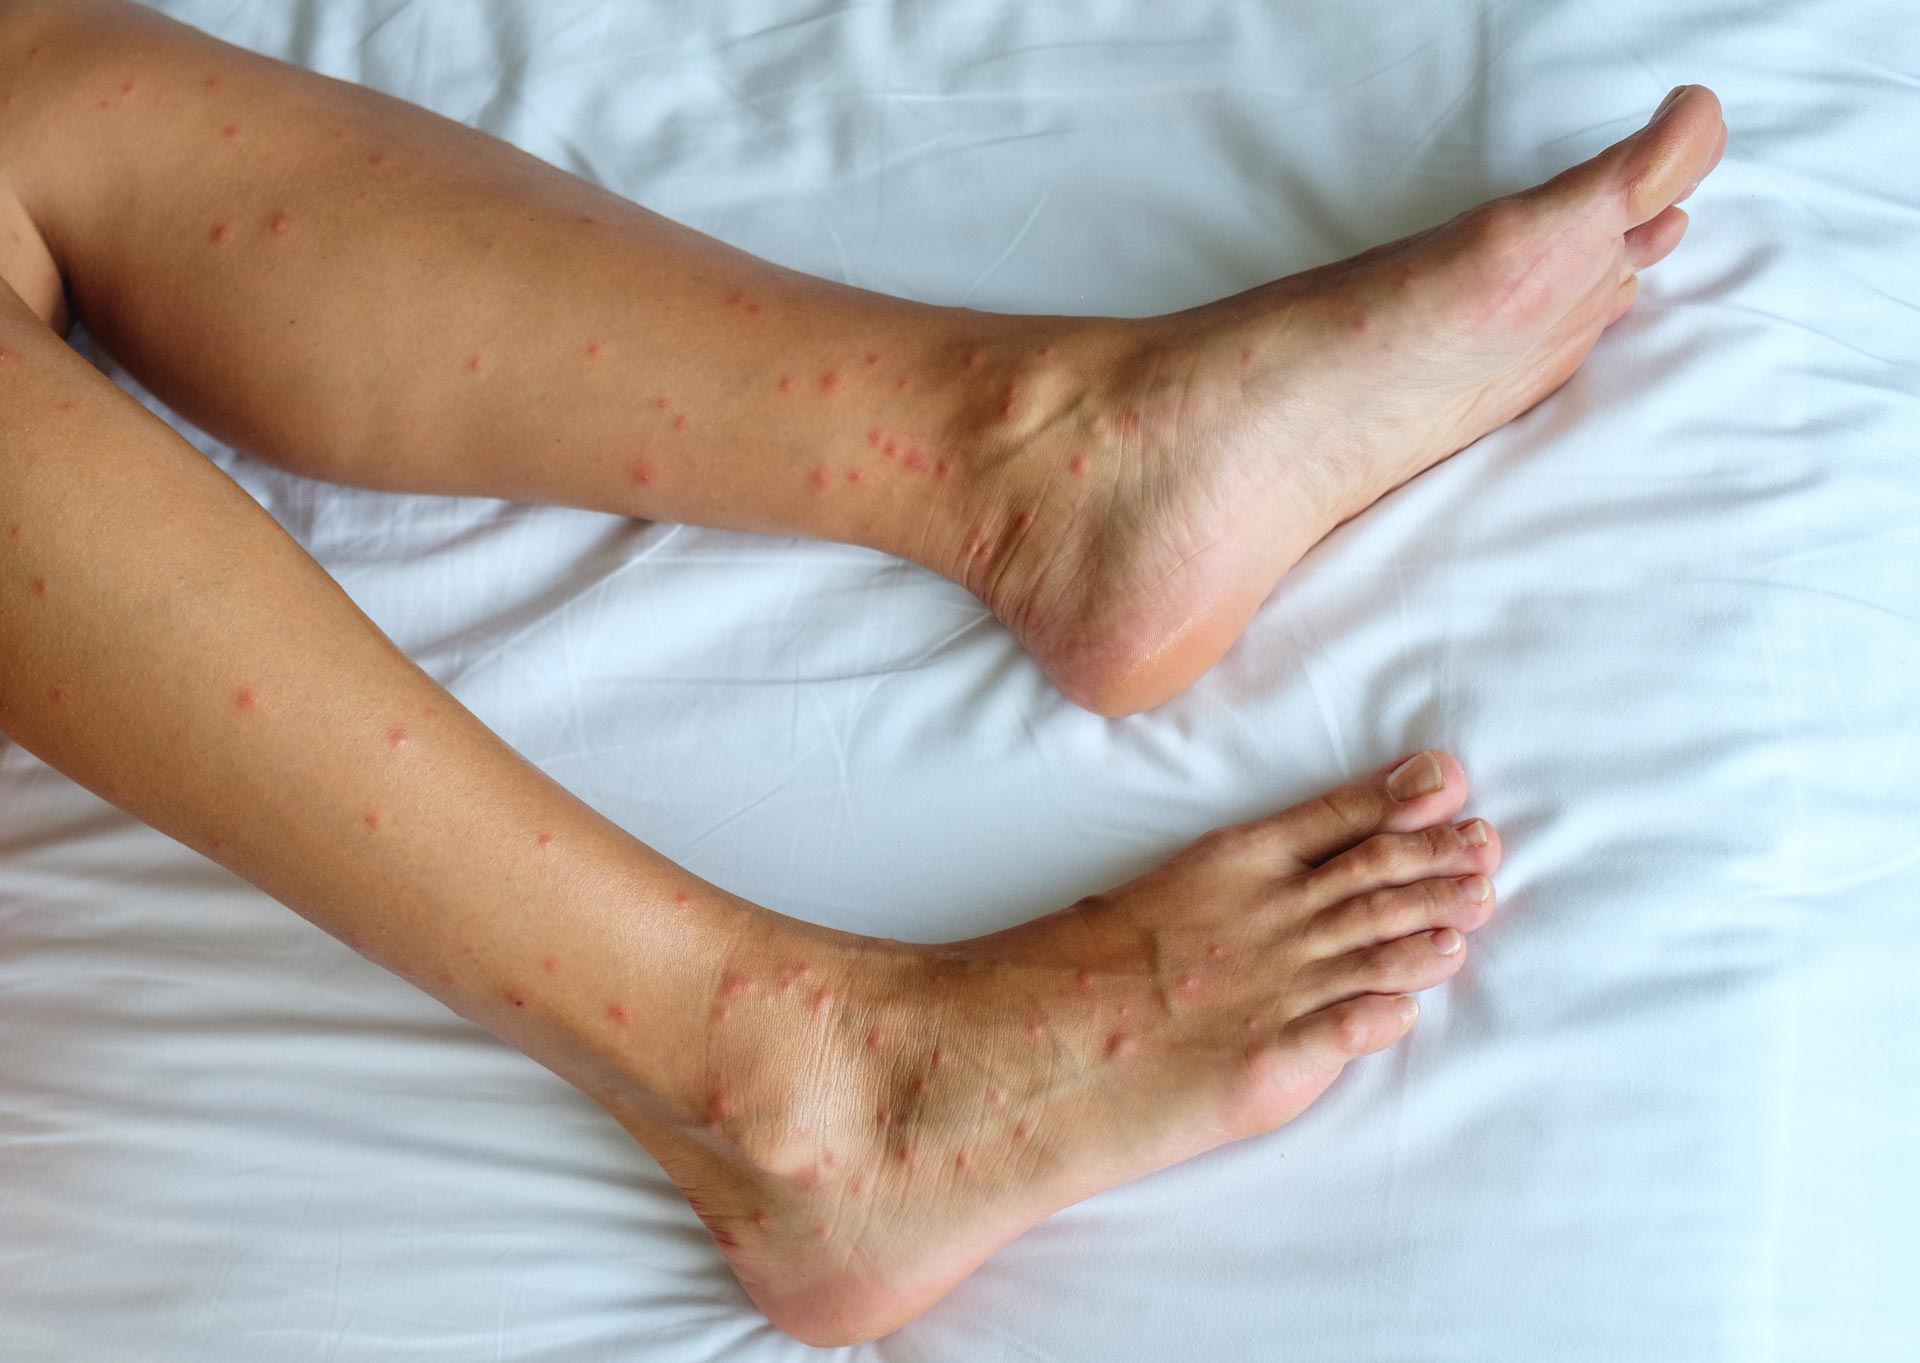 Les jambes d'une personne avec des piqûres de punaises de lit